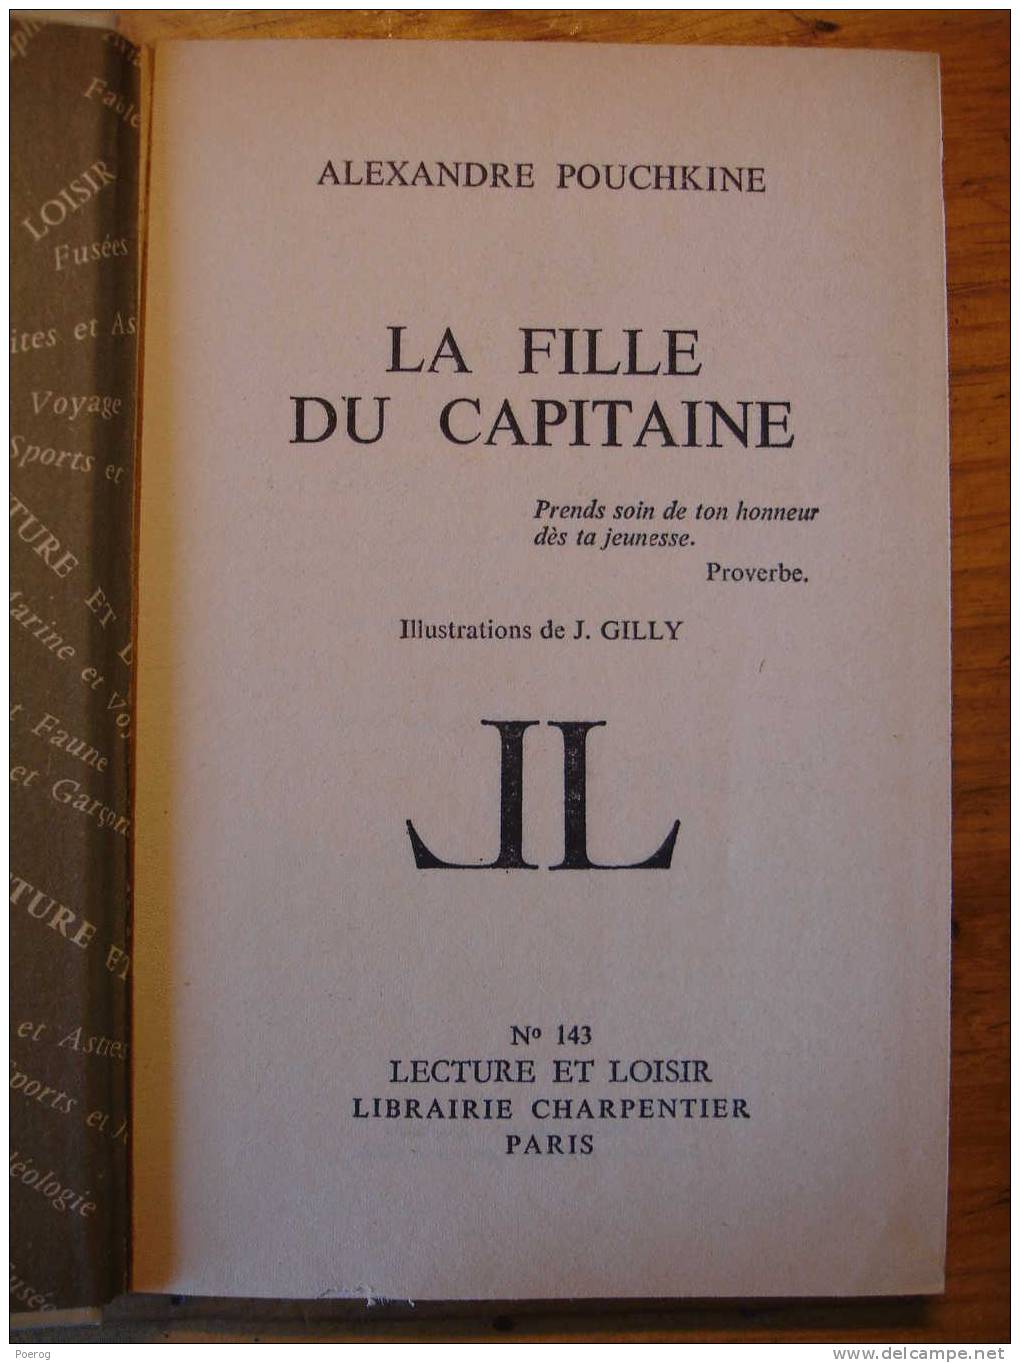 ALEXANDRE POUCHKINE - LA FILLE DU CAPITAINE - LECTURE ET LOISIR N°143 - LIBRAIRIE CHARPENTIER PARIS - 1969 - J. GILLY - Collection Lectures Und Loisirs